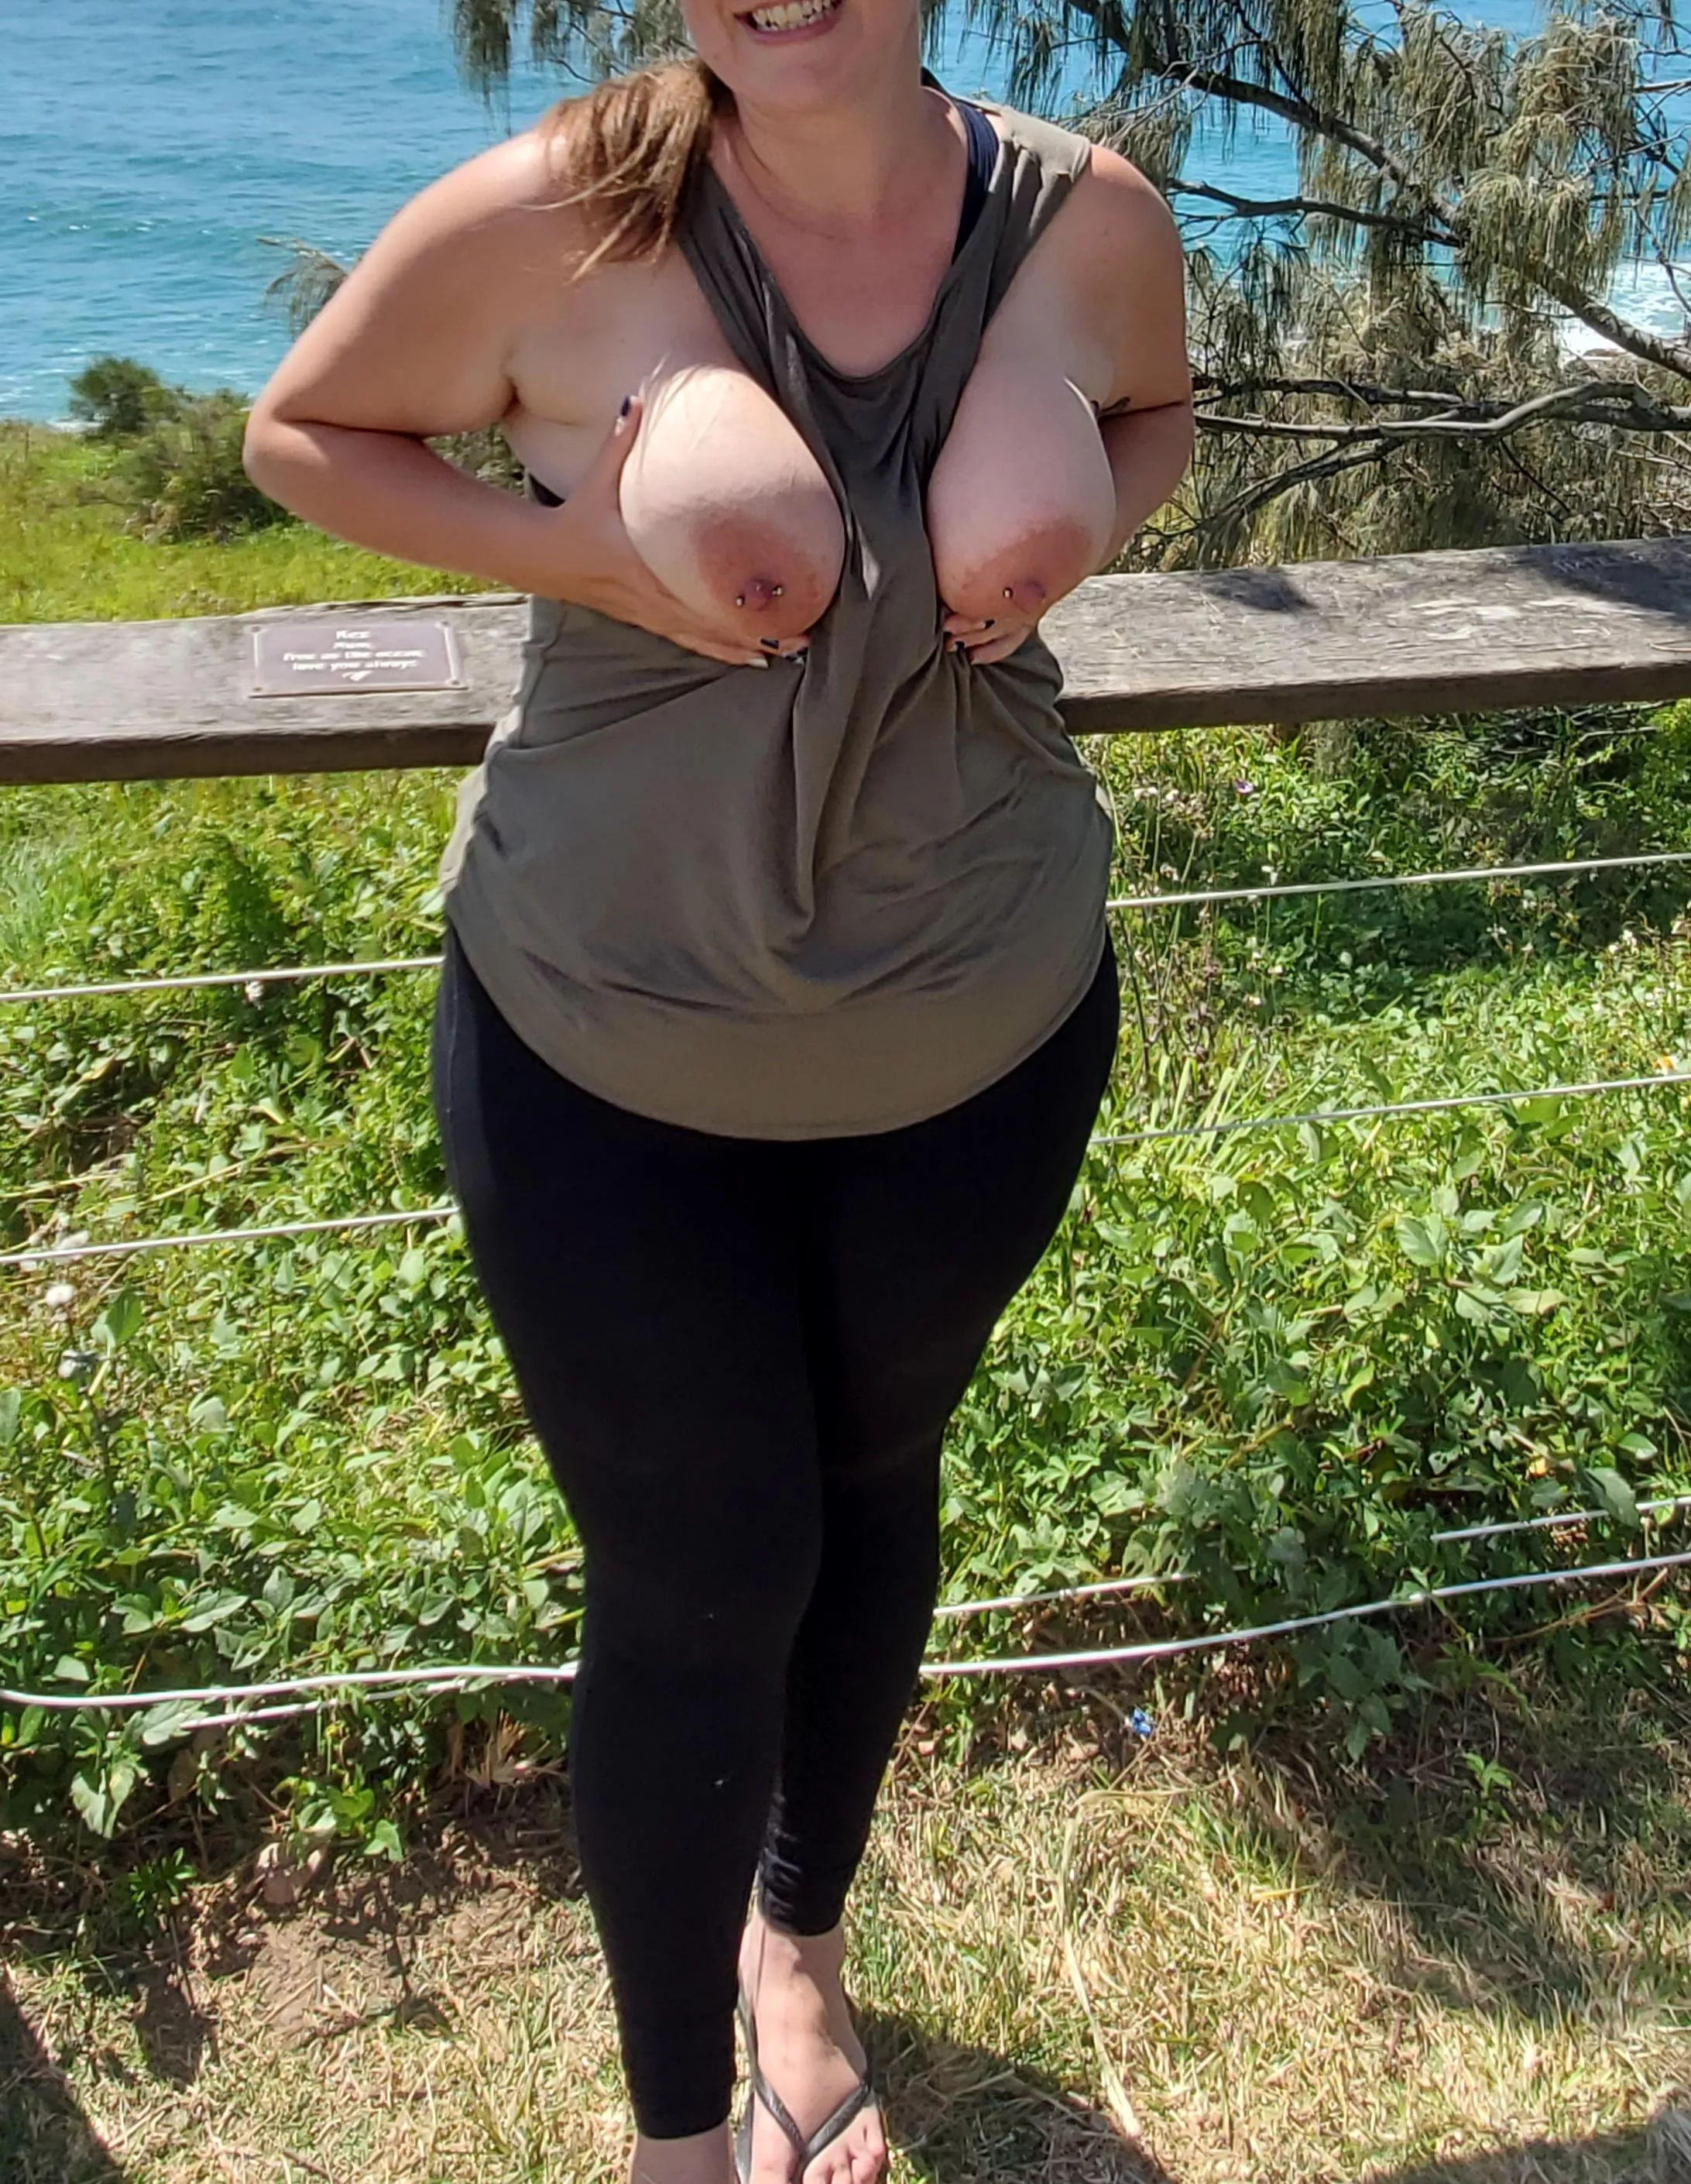 Sunshine Boobs - Sunshine Coast big boobs and a smile nudes : public | NUDE-PICS.ORG